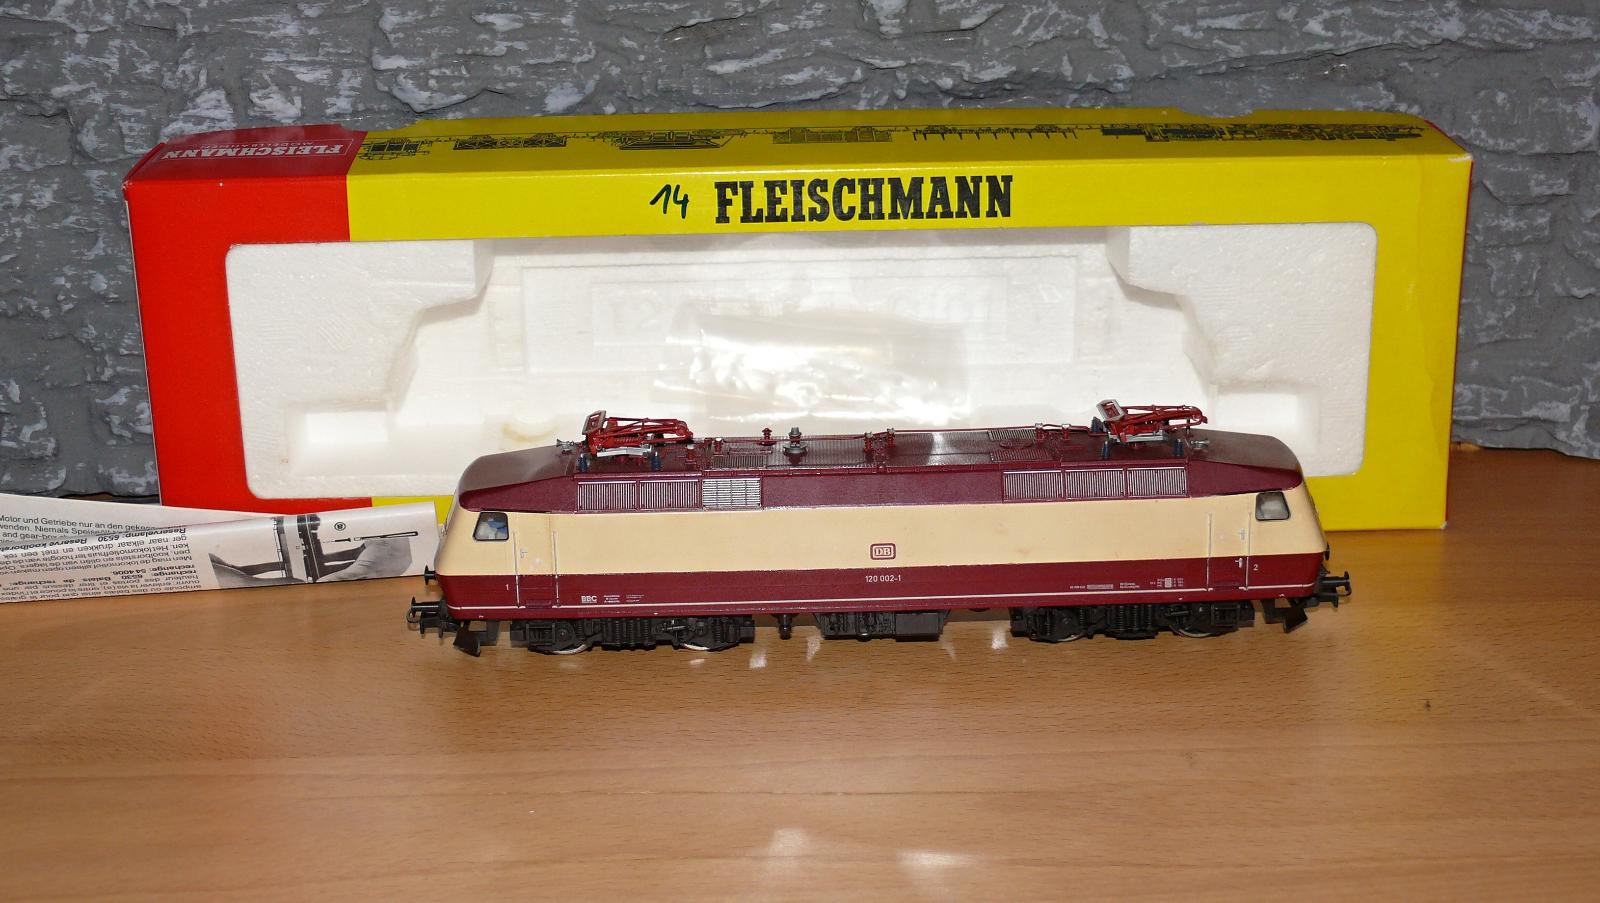 Lokomotiva FLEISCHMAN  pro modelovou železnici H0 velikosti  - Modelová železnice